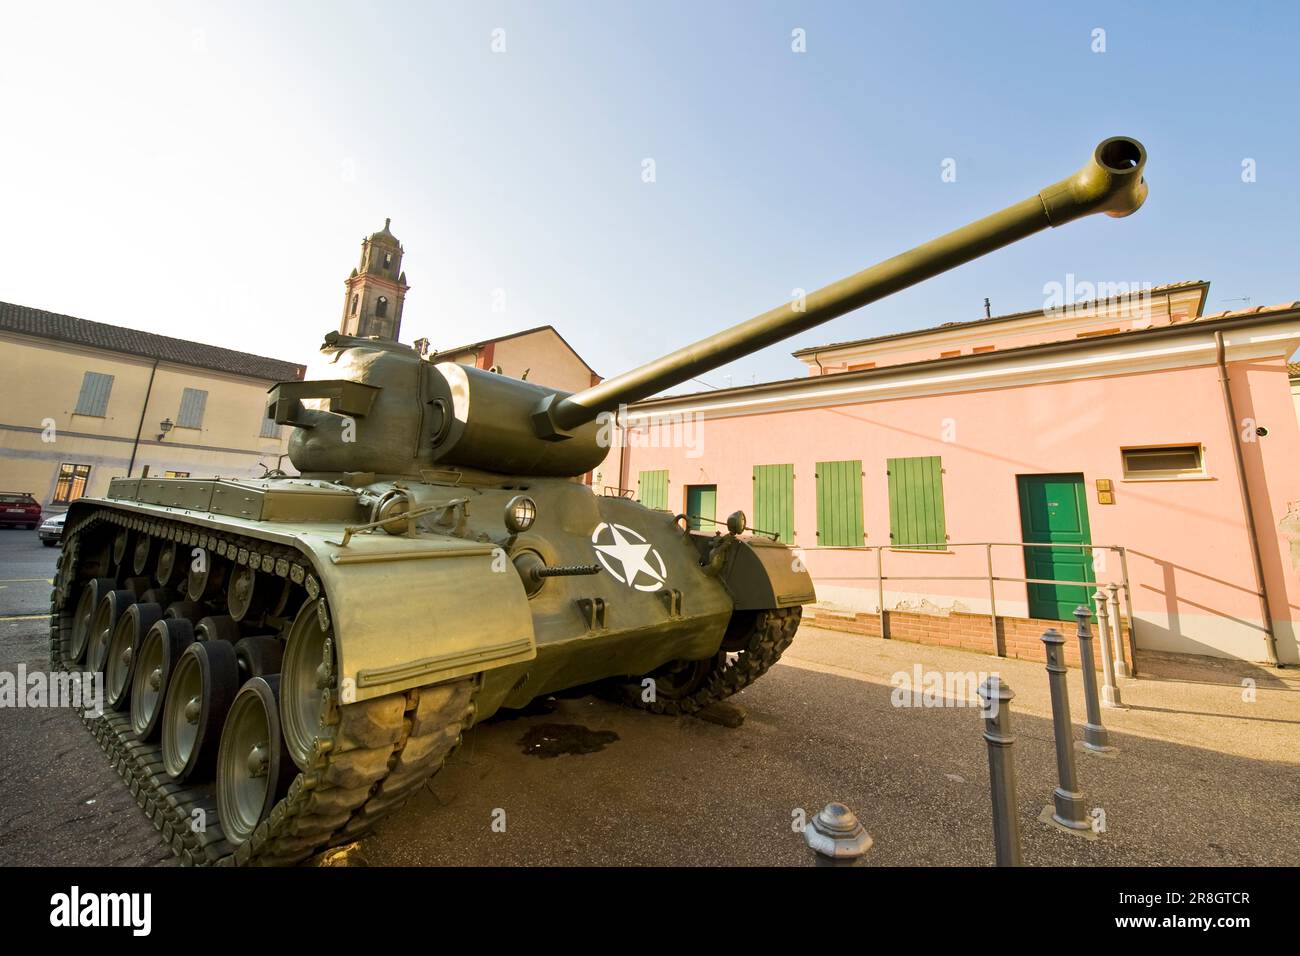 Russian Tank, Brescello (re) Stock Photo